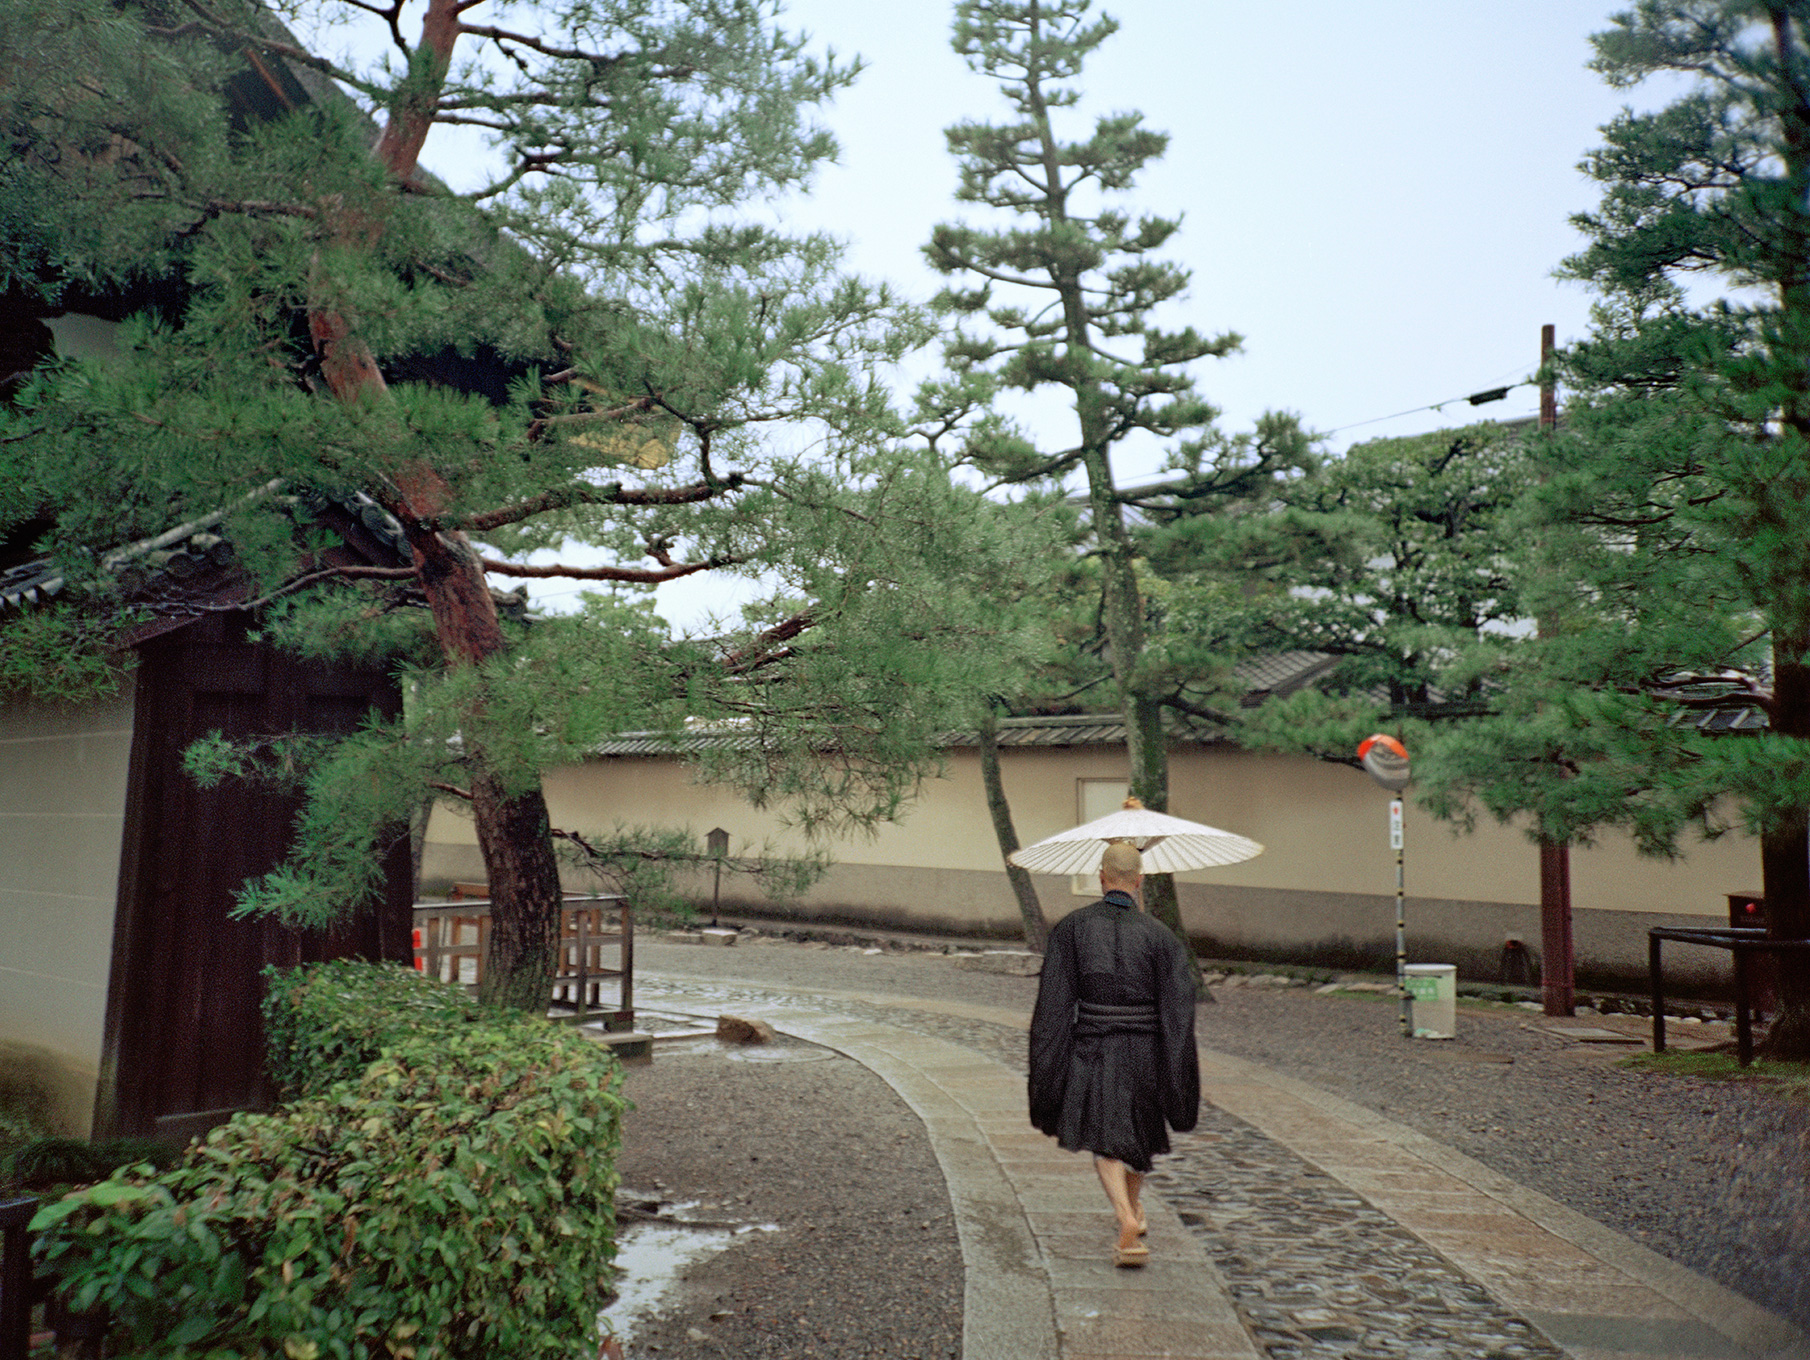   Monk at Daitokuji temple,  Kyoto, 2003  